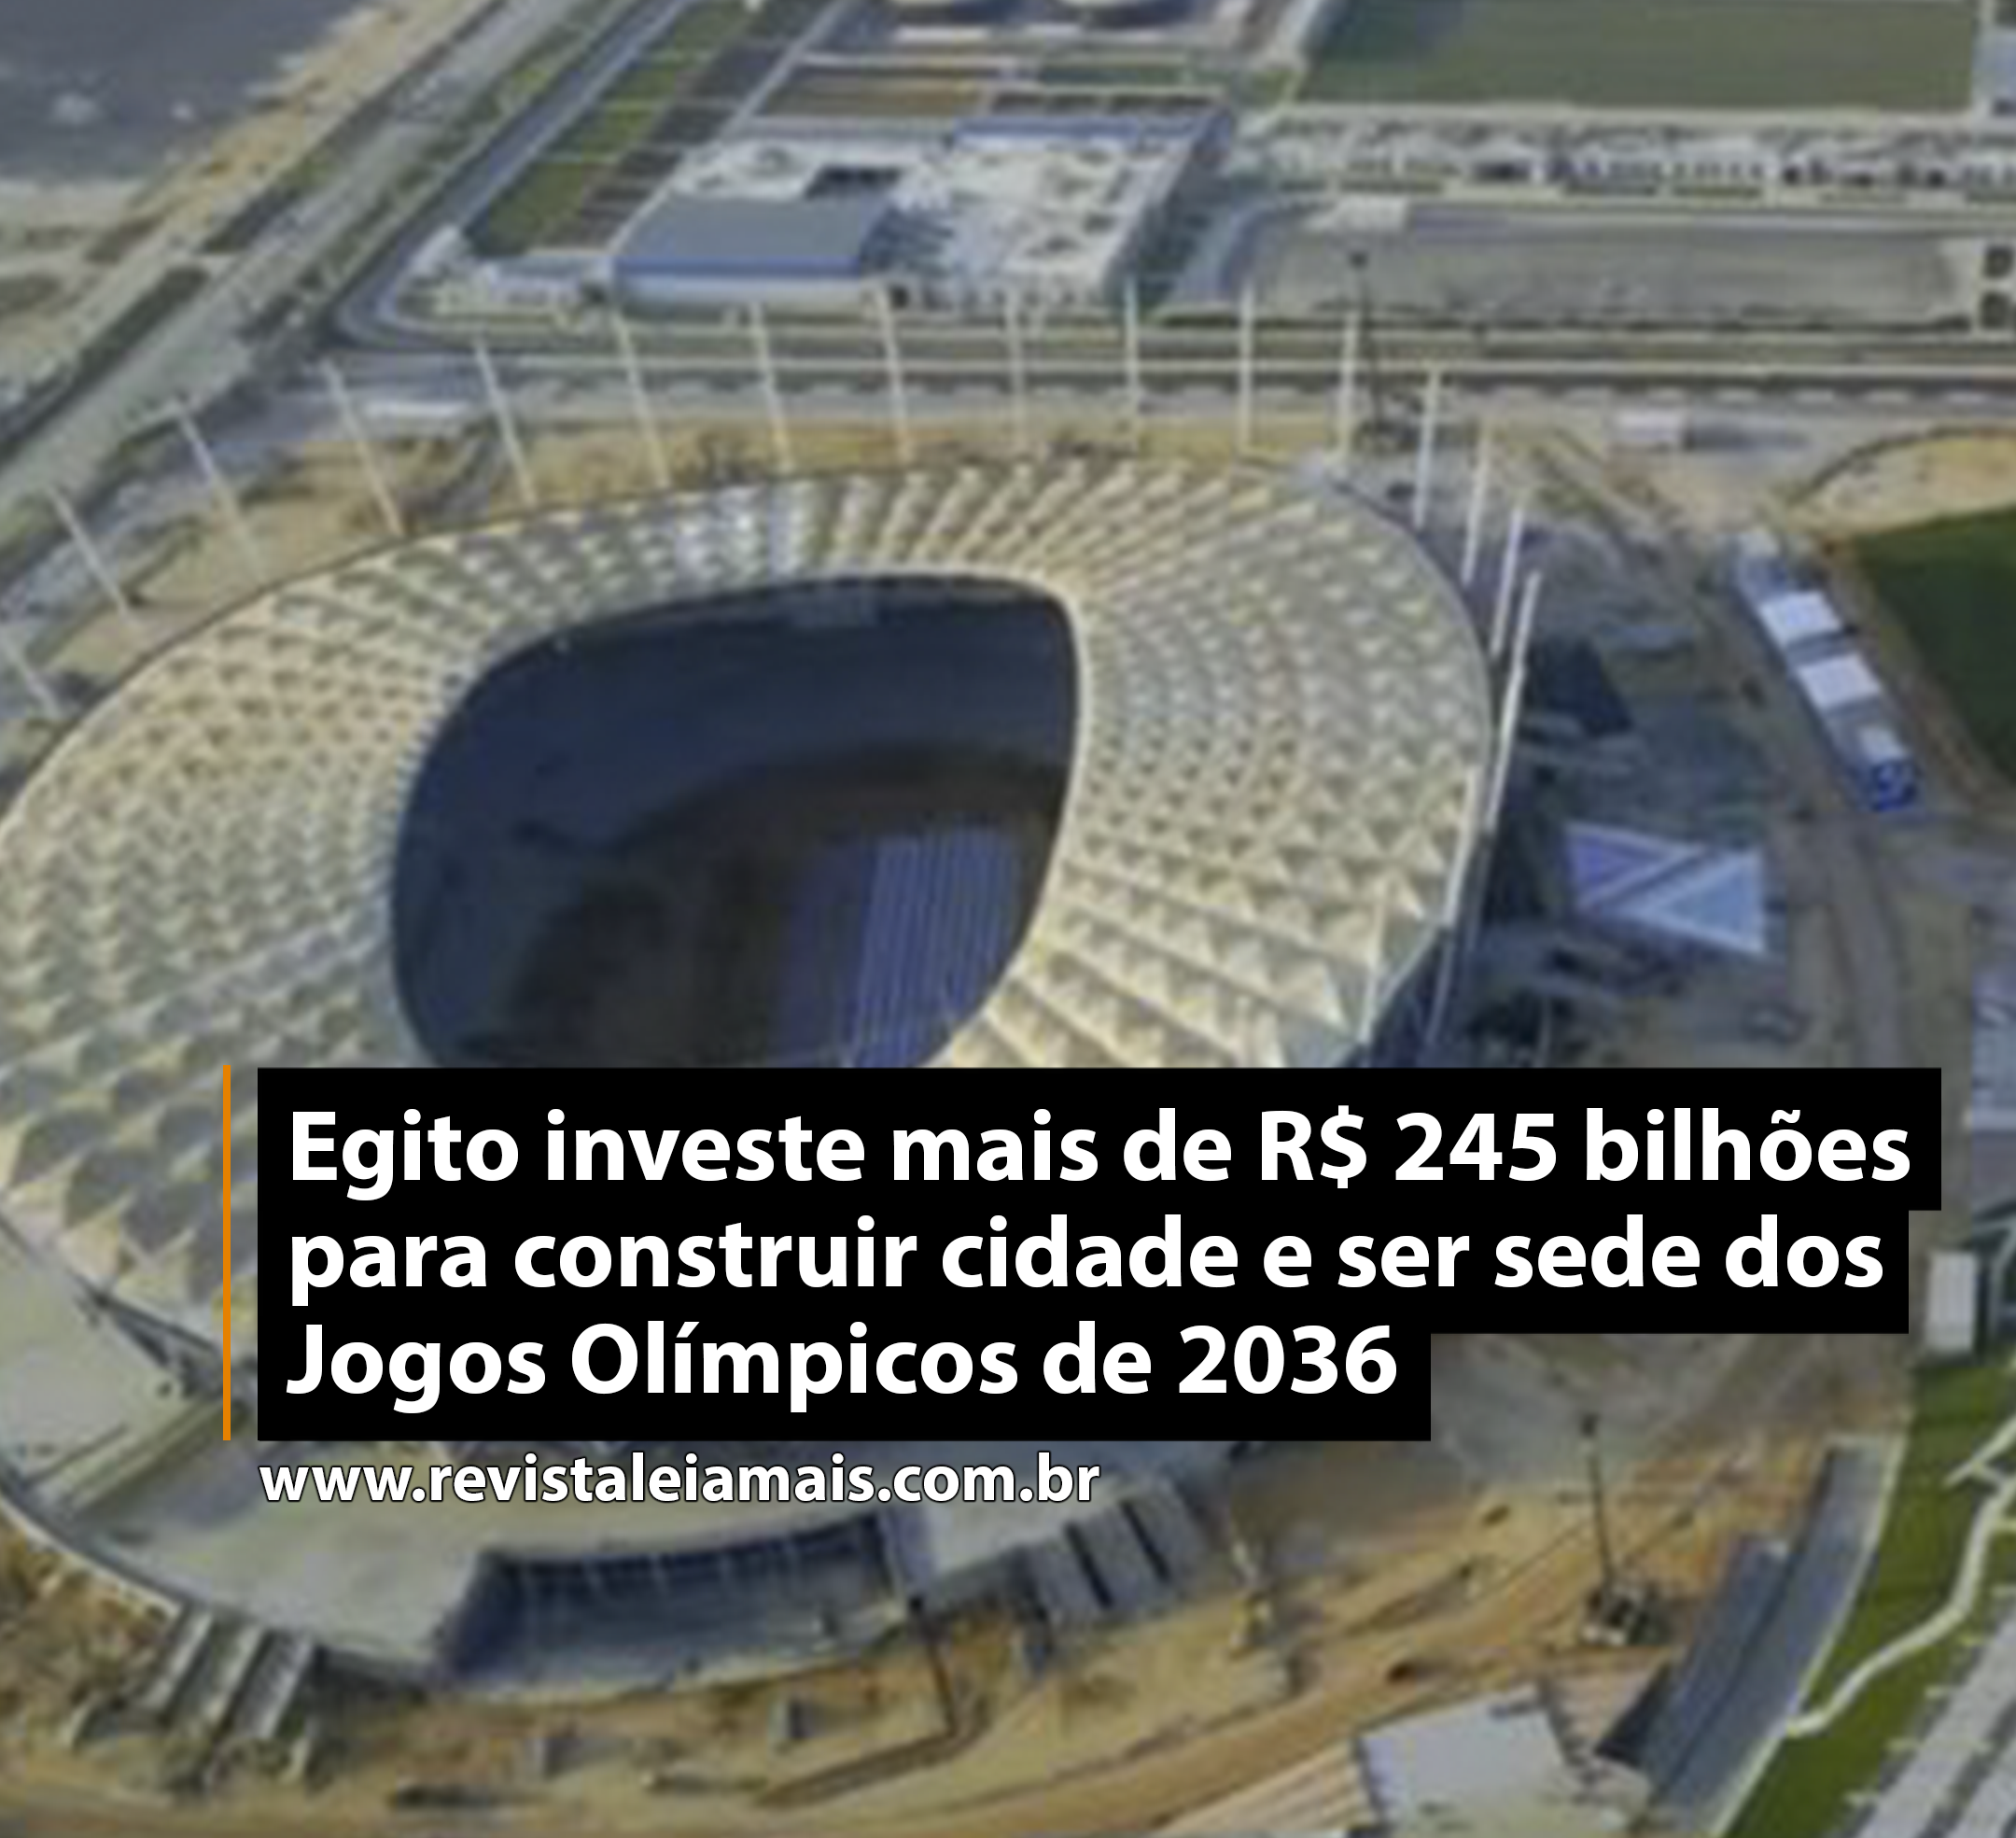 Egito investe mais de R$ 245 bilhões para construir cidade e ser sede dos Jogos Olímpicos de 2036